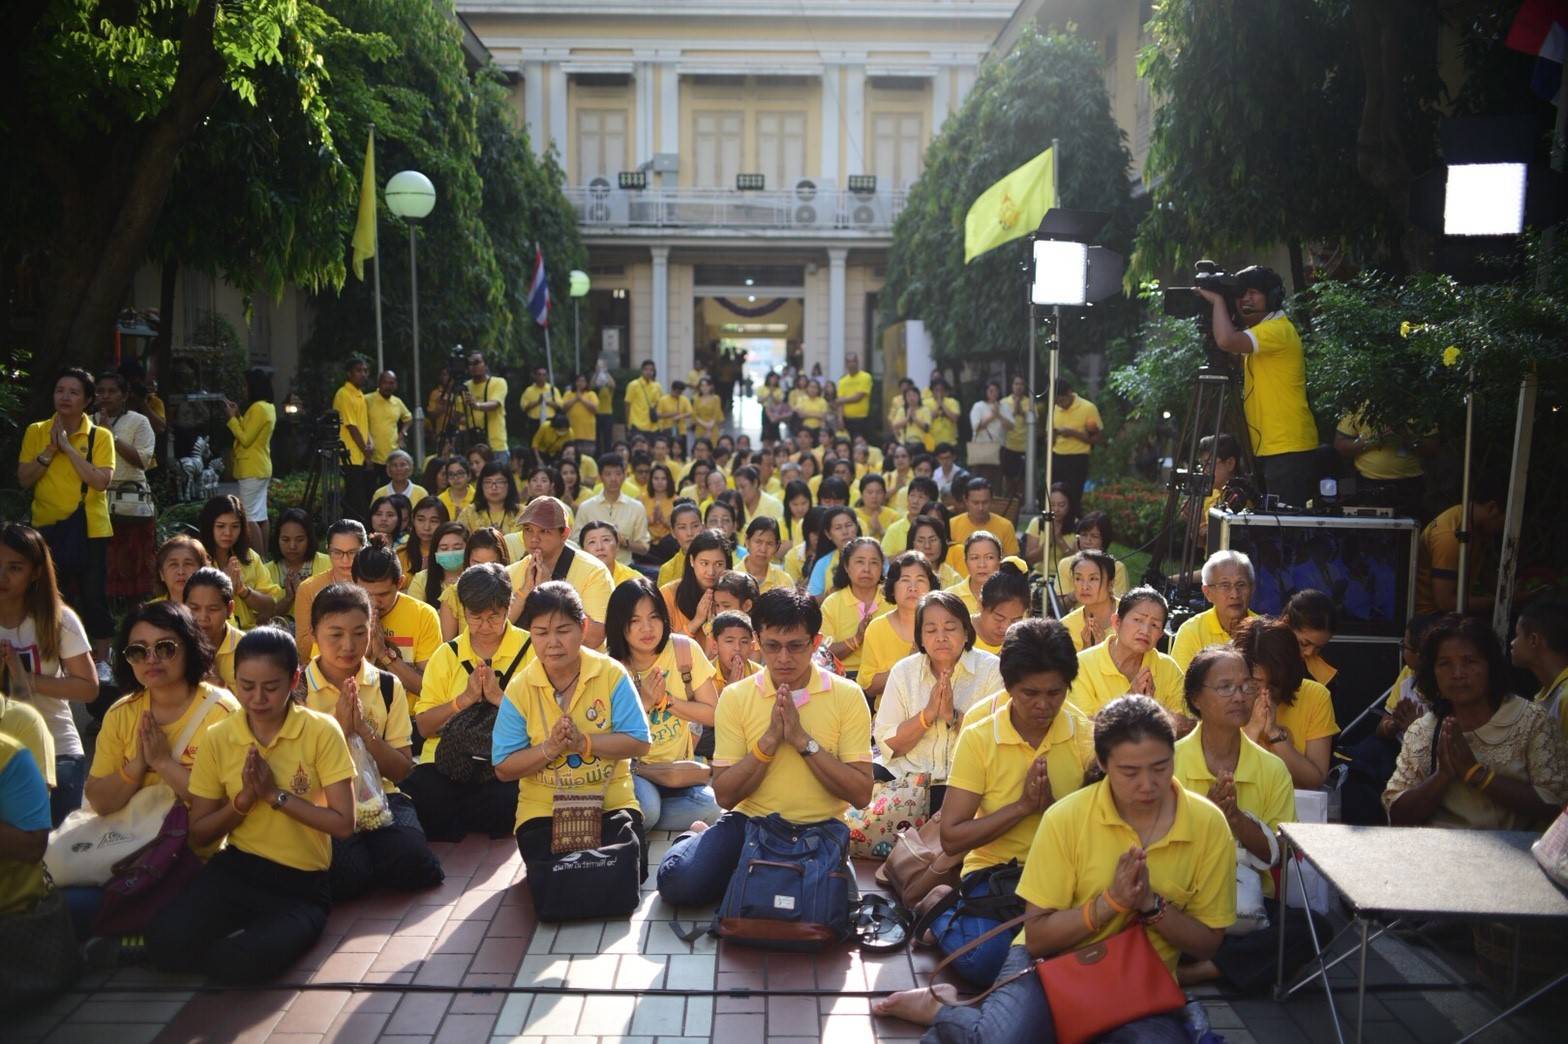 ประชาชนพร้อมใจสวมเสื้อสีเหลืองร่วมงาน  “ศิระกรานพระภูบาลนวมินทร์”  ณ โรงพยาบาลศิริราช